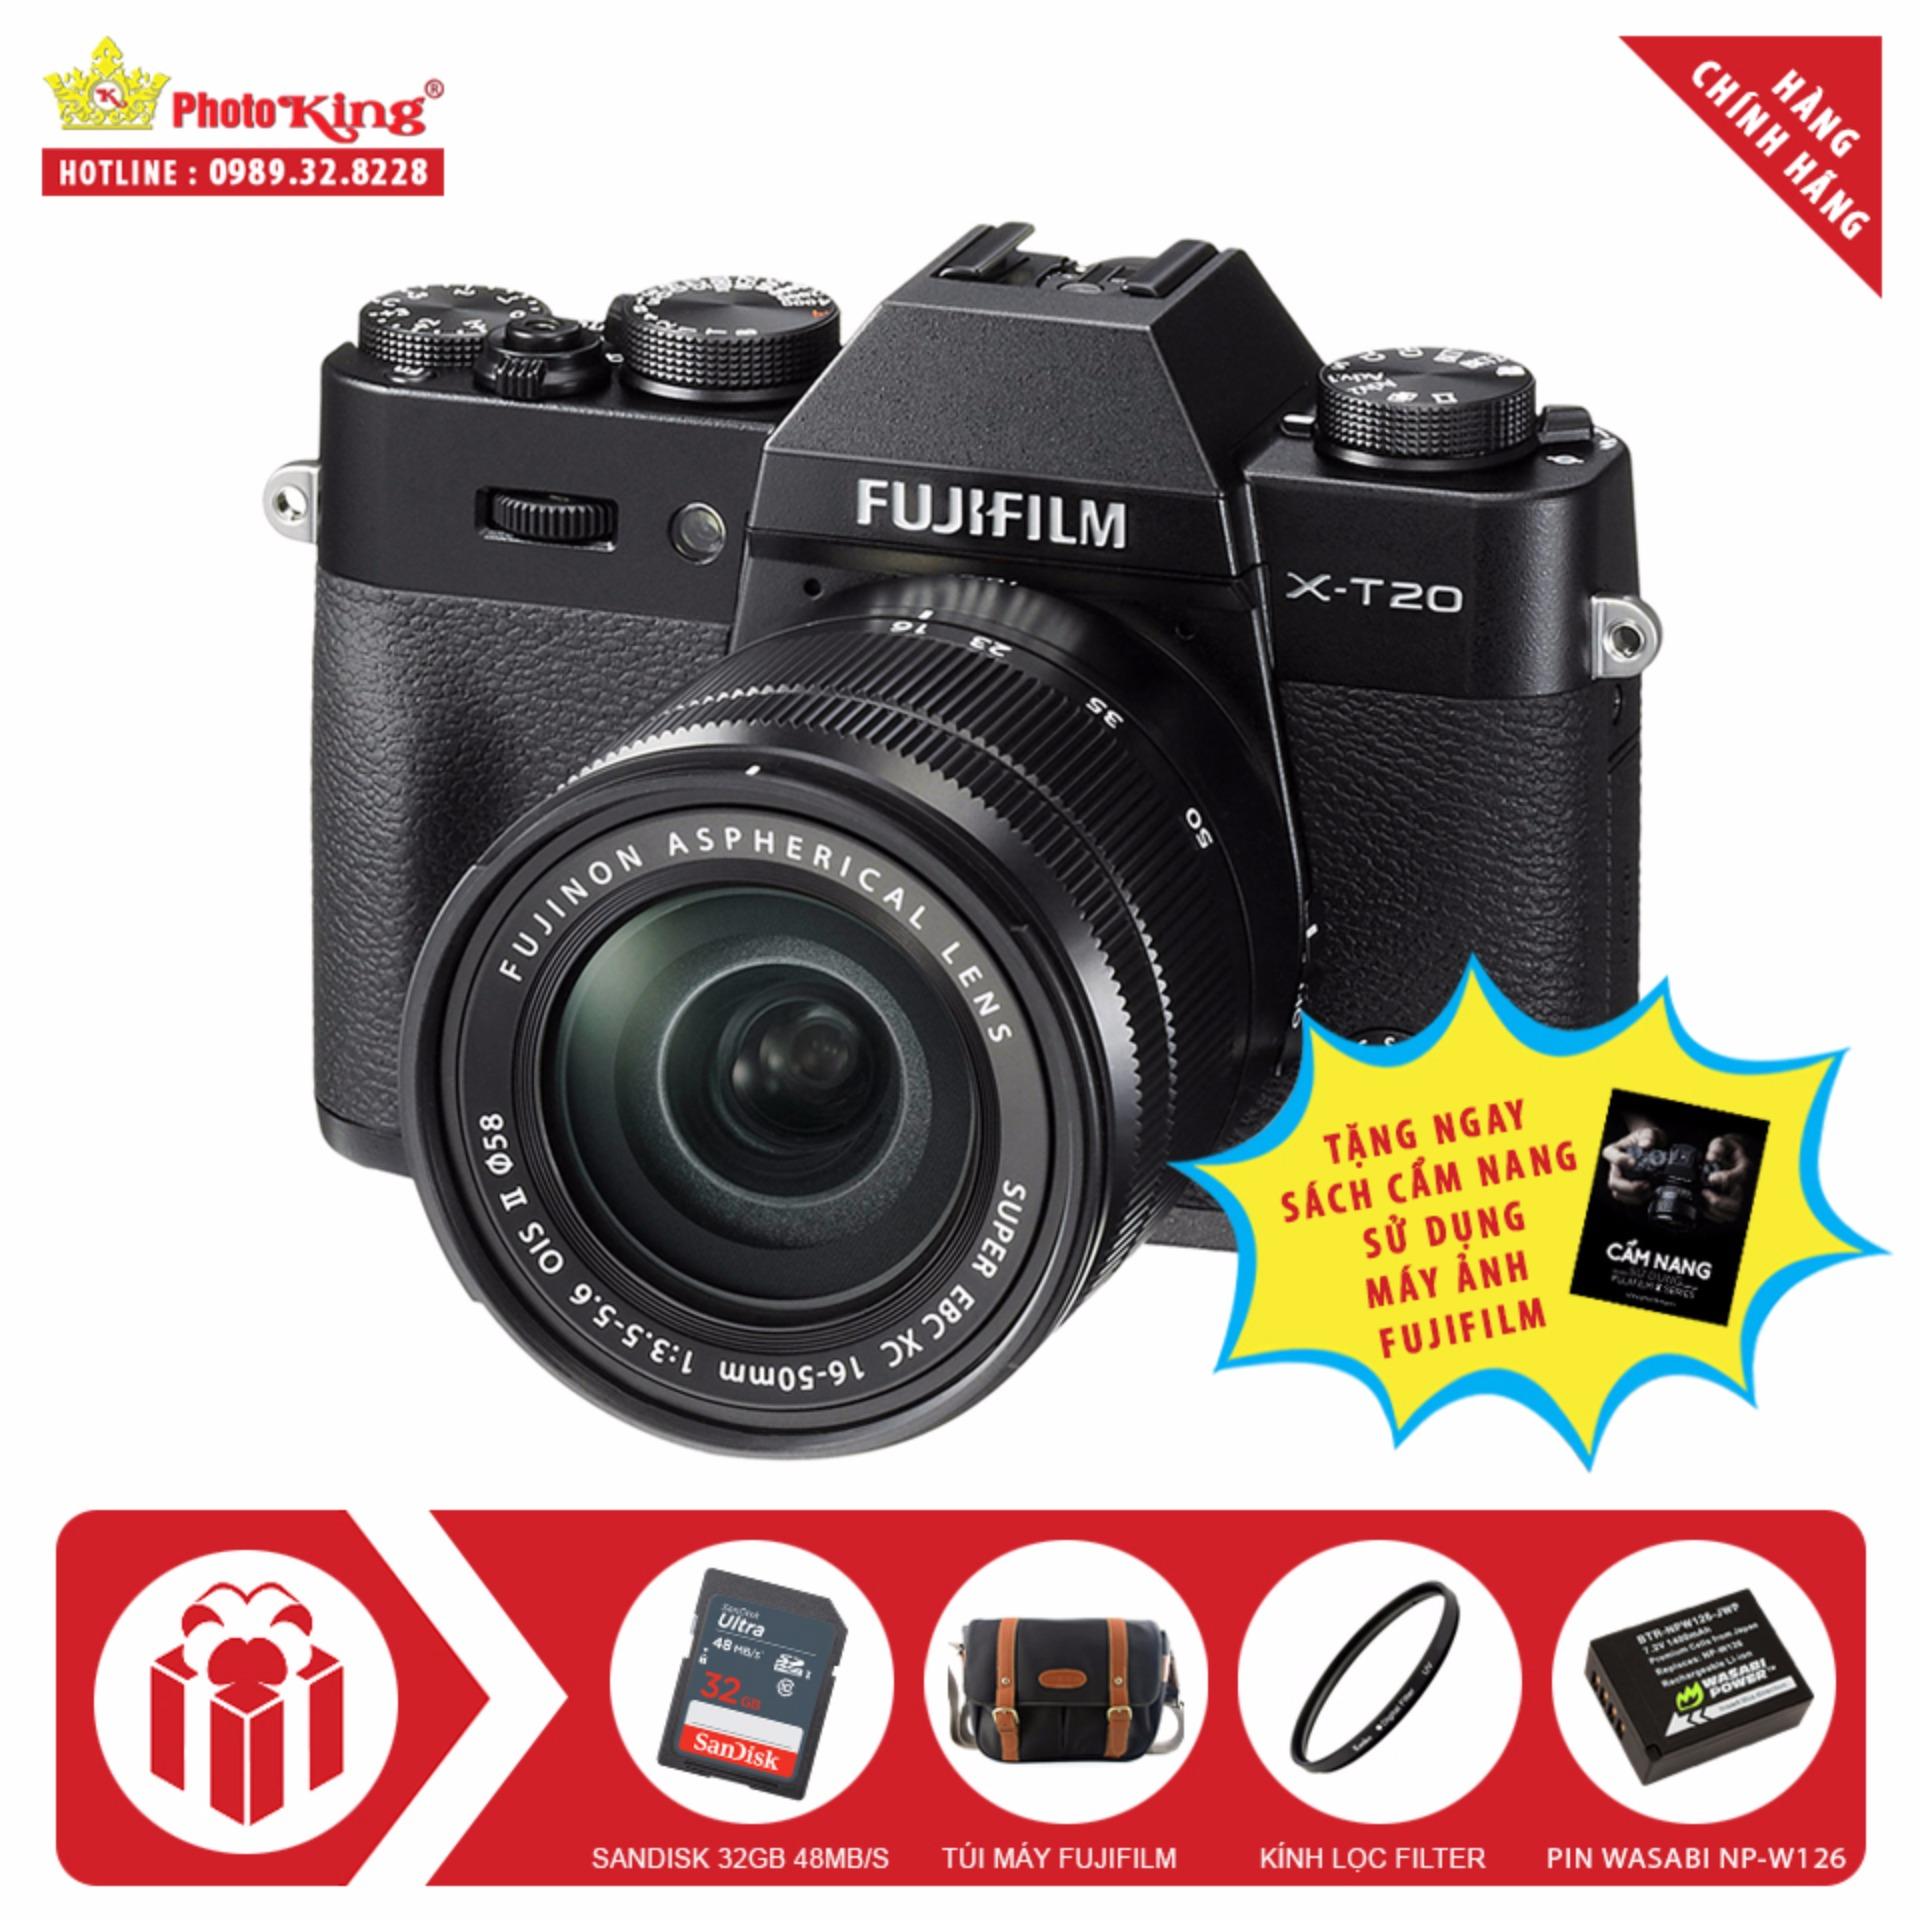 Fujifilm X-T20 KIT XC 16-50mm OIS II (Đen) + Tặng kèm Thẻ nhớ Sandisk 32Gb 48Mb/s (320x) + Túi FujiFilm...